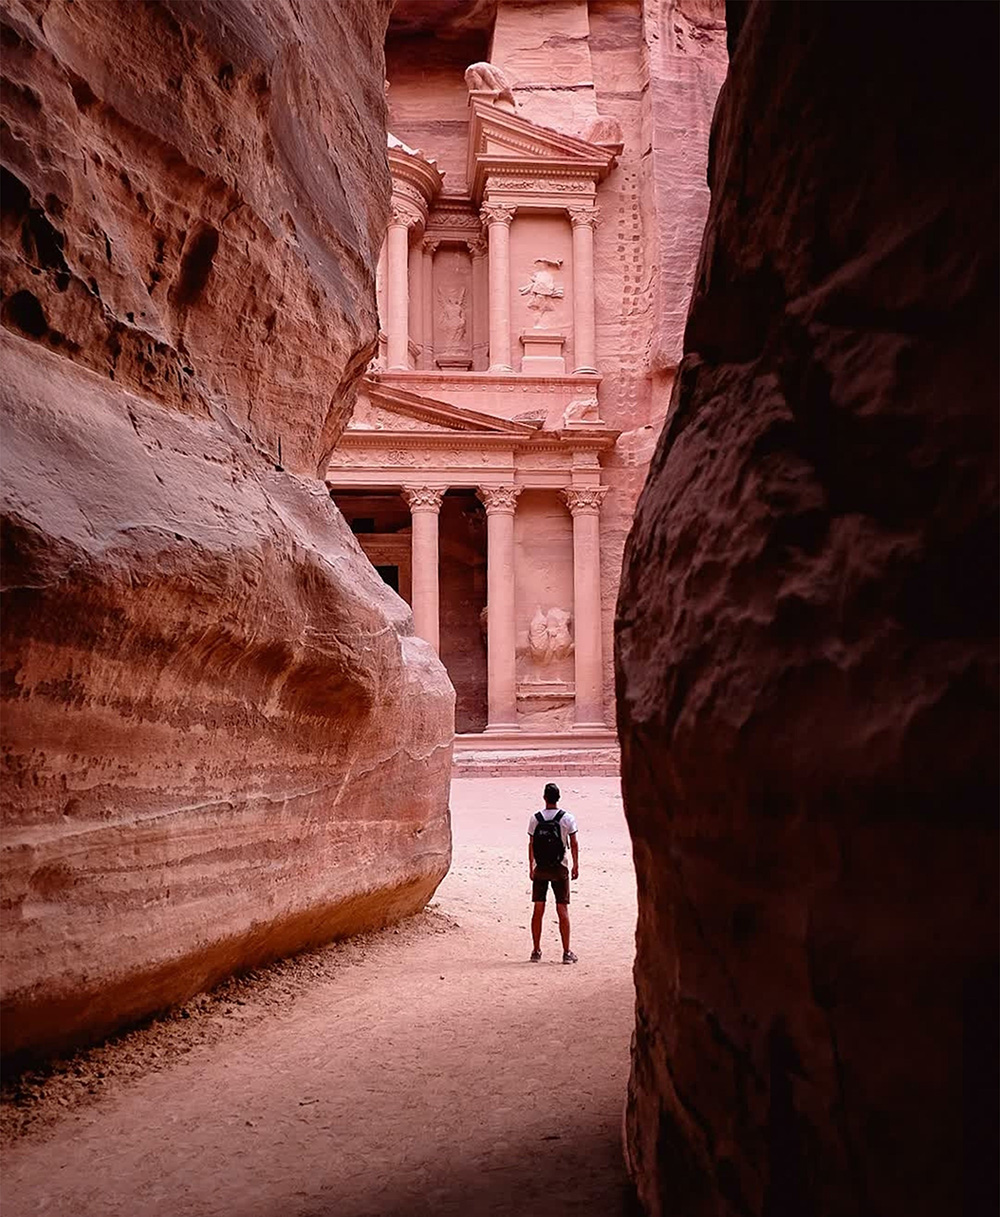 Die Felsenstadt Petra in Jordanien lockt mit rosafarbenem Sandstein und jahrtausendealten Bauten.